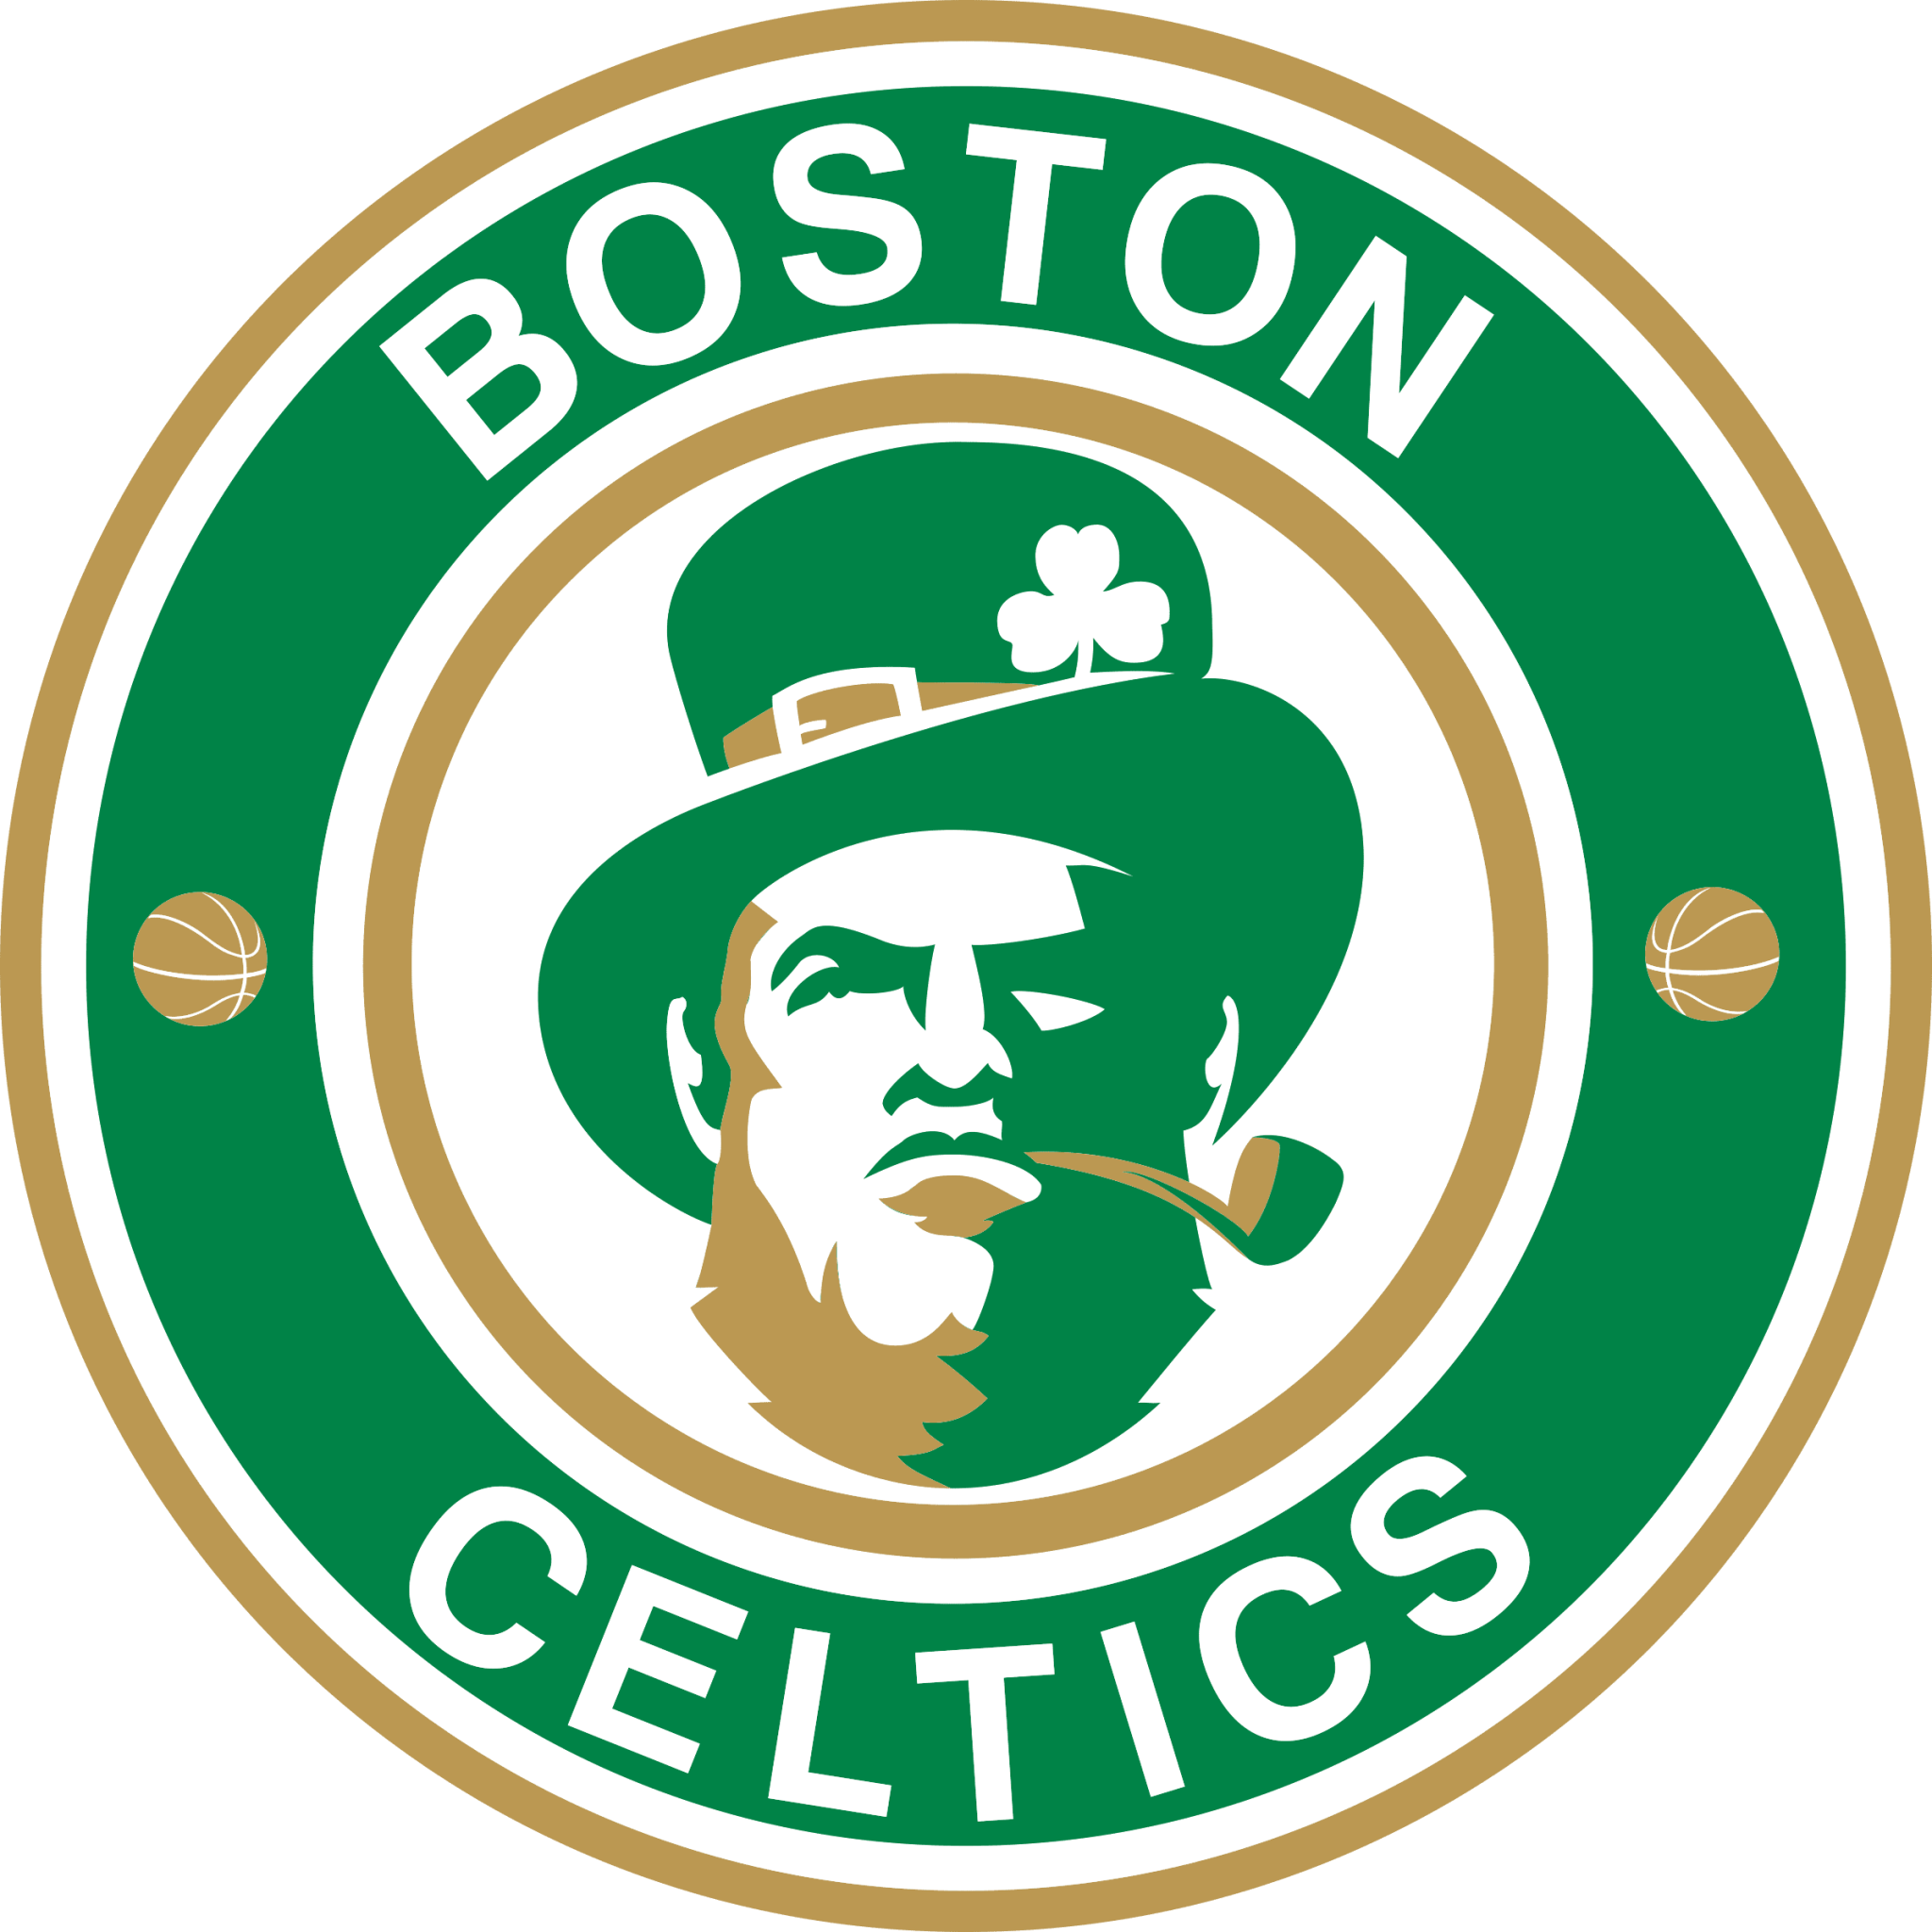 Celtics logo png free png image downloads